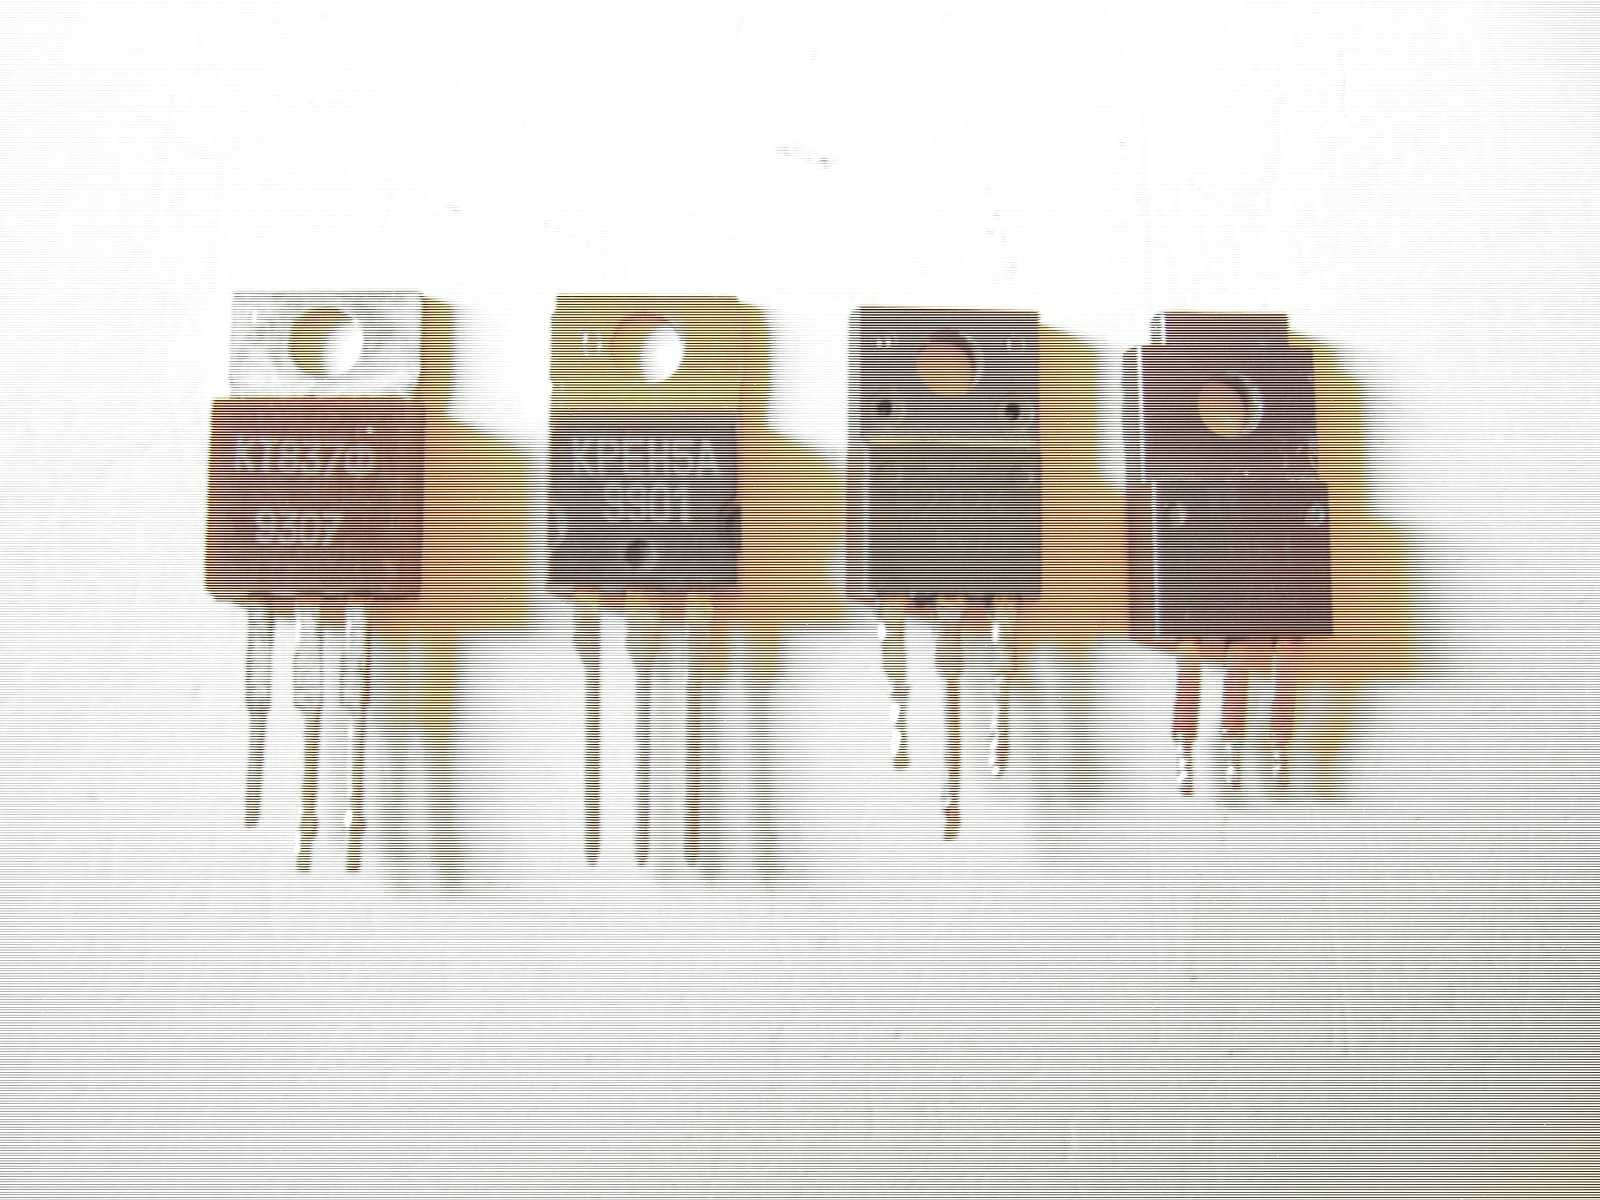 транзистор КТ-838А ( 1500В )  К 2324 ( 600В )  К 2761 ( 600В ) и др.